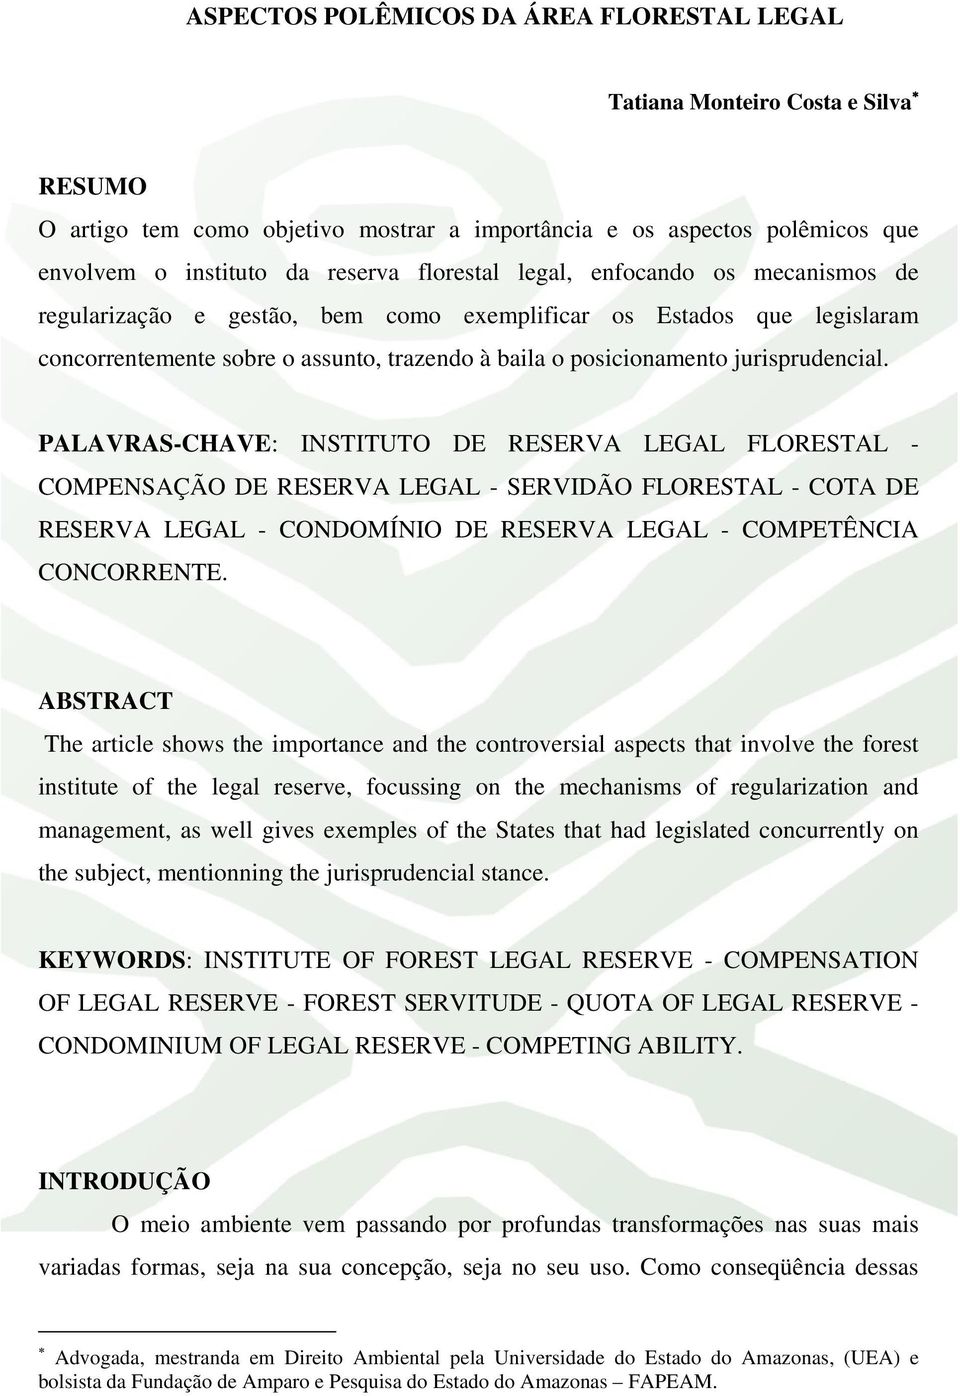 PALAVRAS-CHAVE: INSTITUTO DE RESERVA LEGAL FLORESTAL - COMPENSAÇÃO DE RESERVA LEGAL - SERVIDÃO FLORESTAL - COTA DE RESERVA LEGAL - CONDOMÍNIO DE RESERVA LEGAL - COMPETÊNCIA CONCORRENTE.